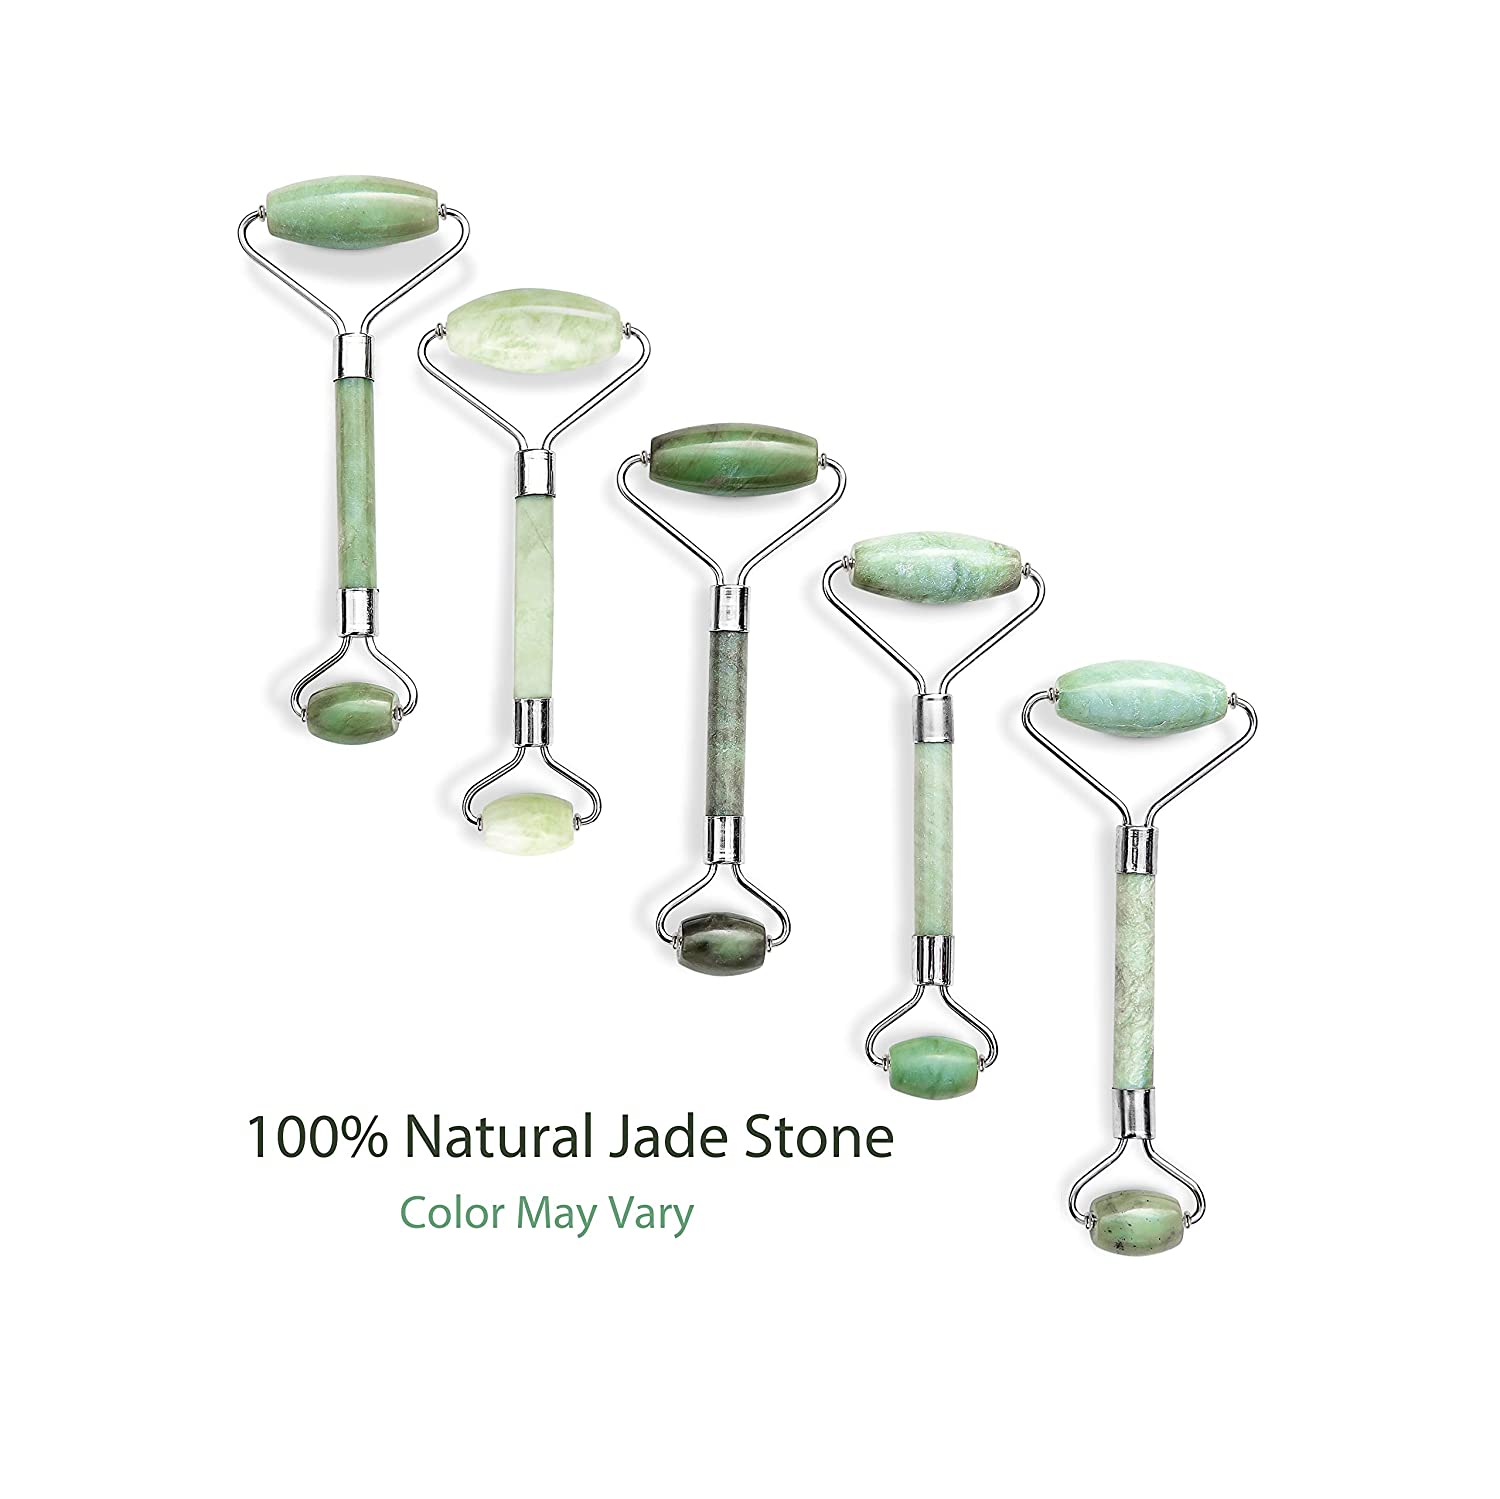 natural jade stone color may vary